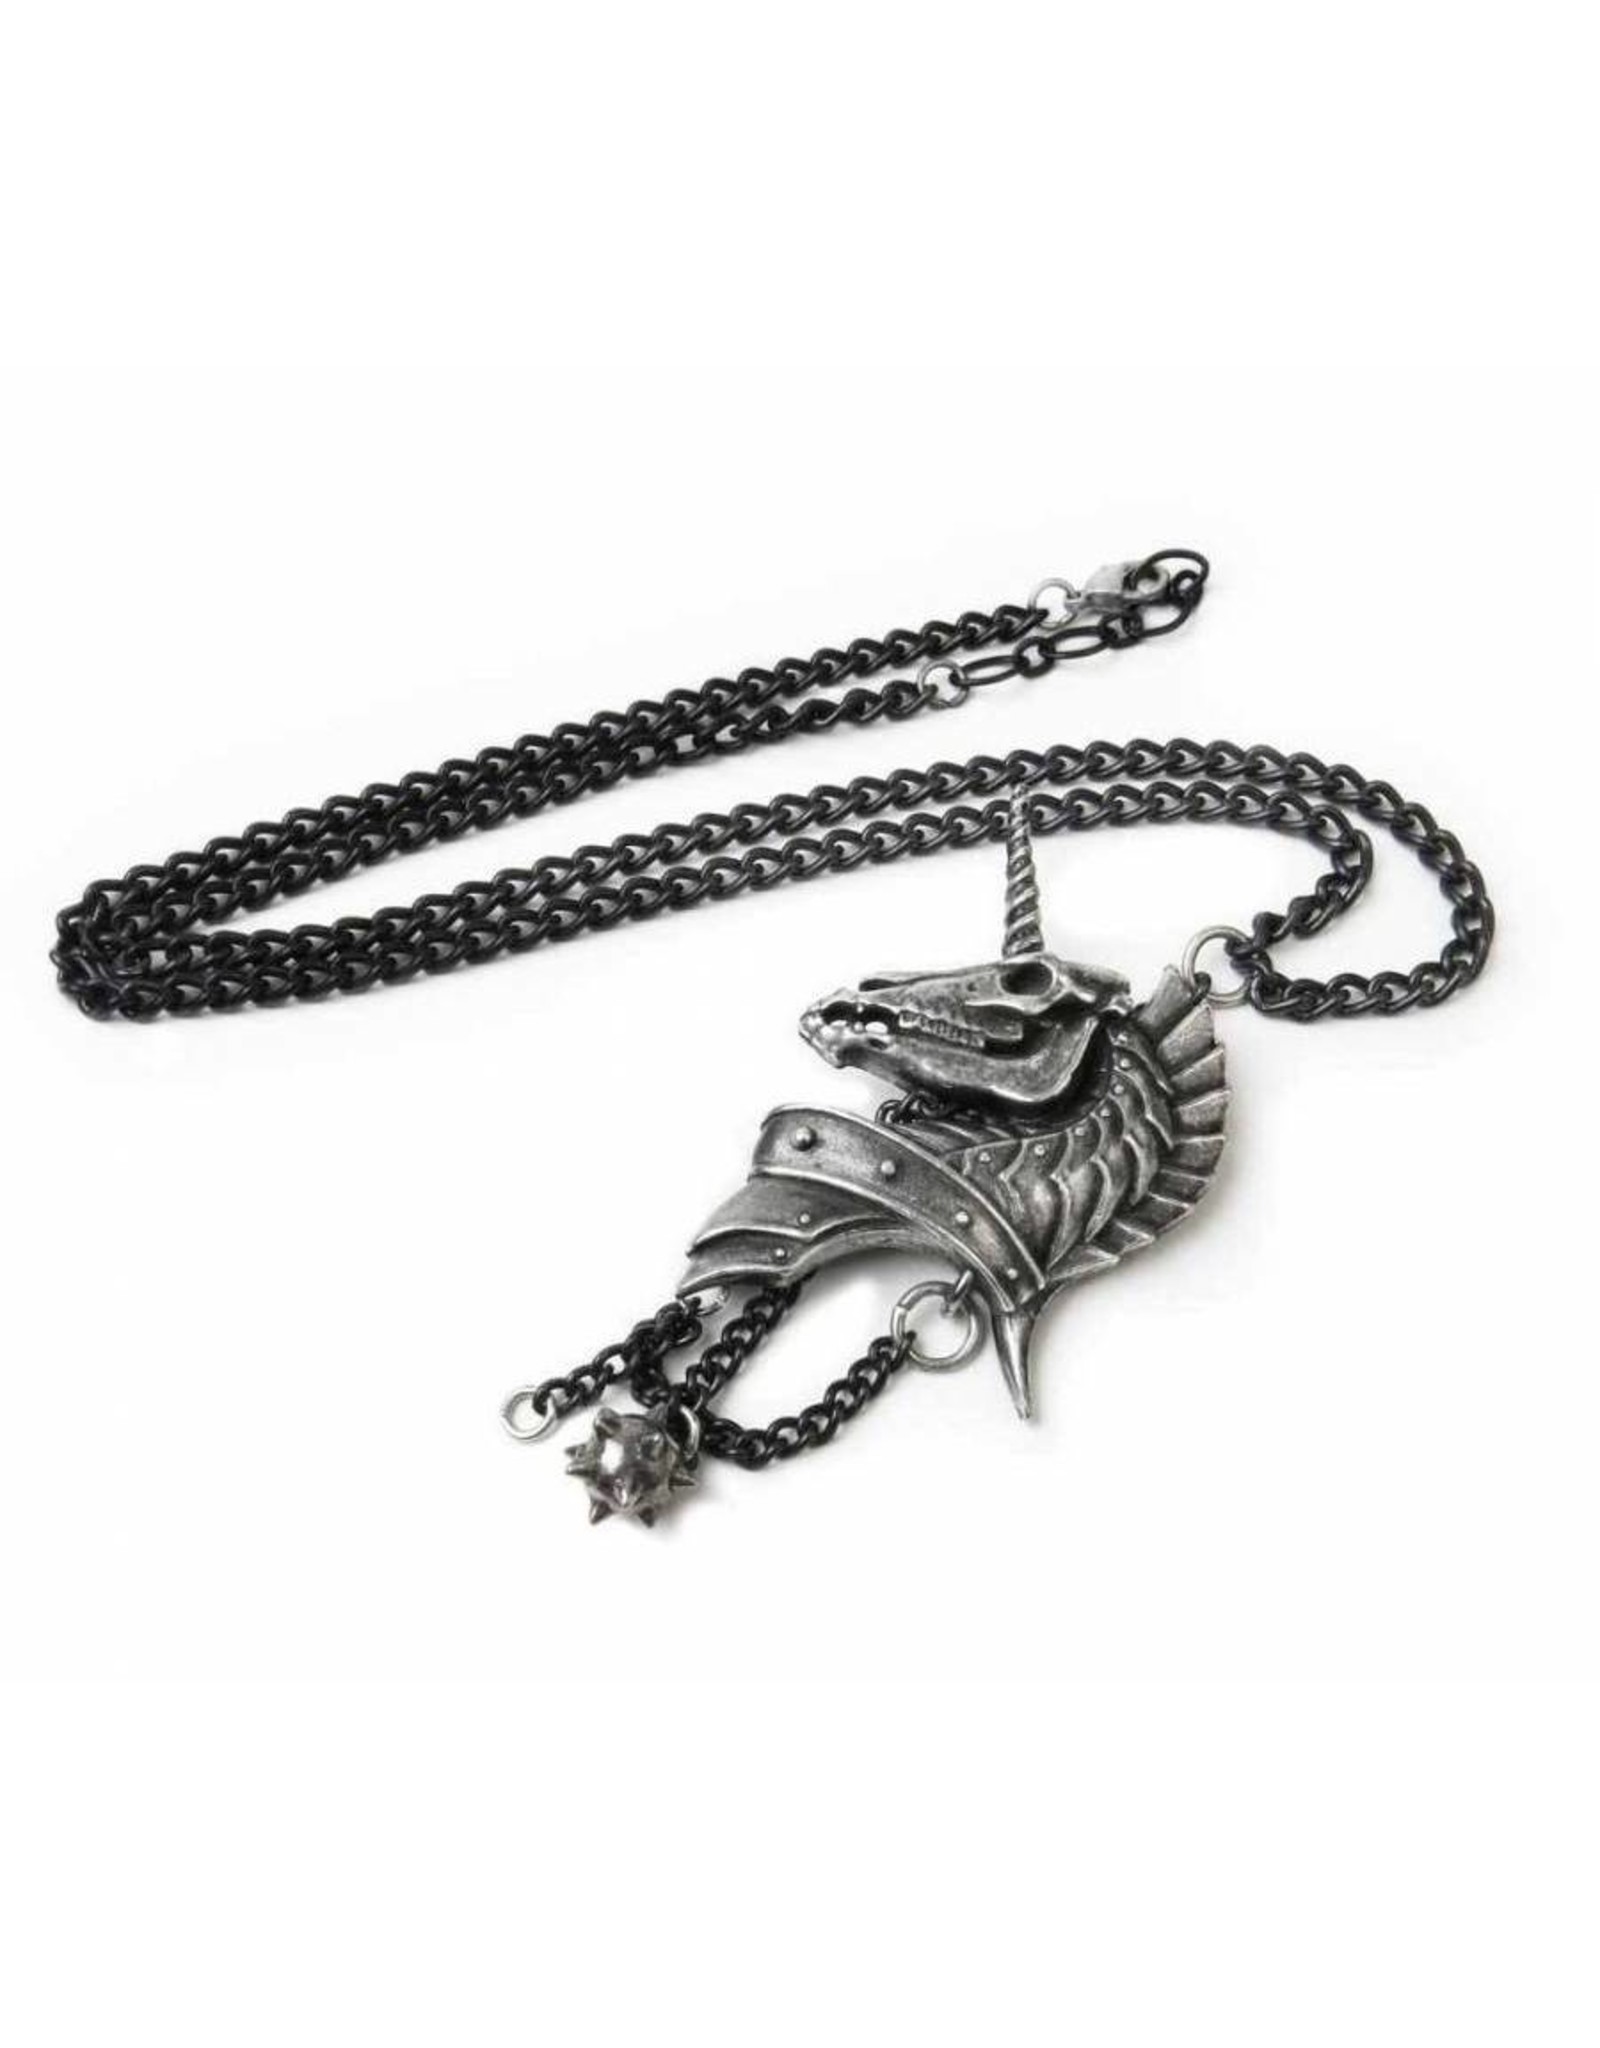 Alchemy Gothic jewellery Steampunk jewellery - Geistalon pendant and necklace Alchemy